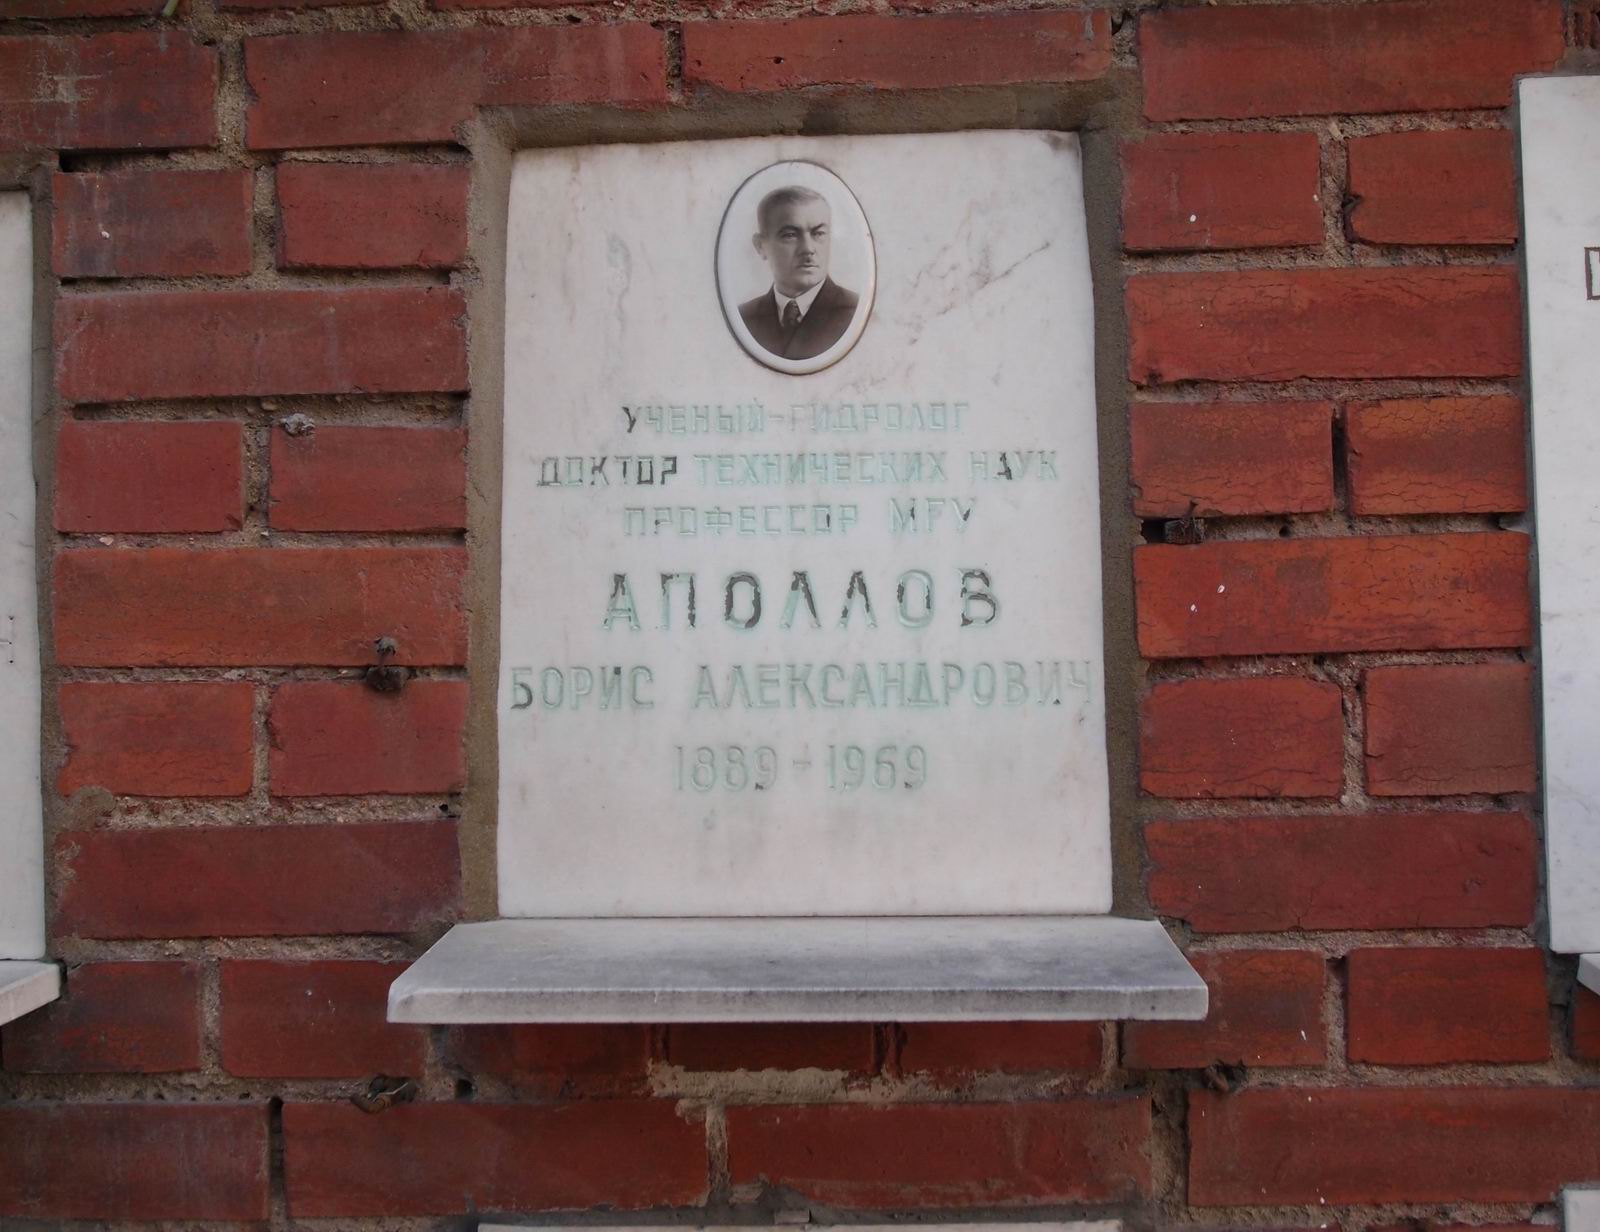 Плита на нише Аполлова Б.А. (1889-1969), на Новодевичьем кладбище (колумбарий [124]-30-3).